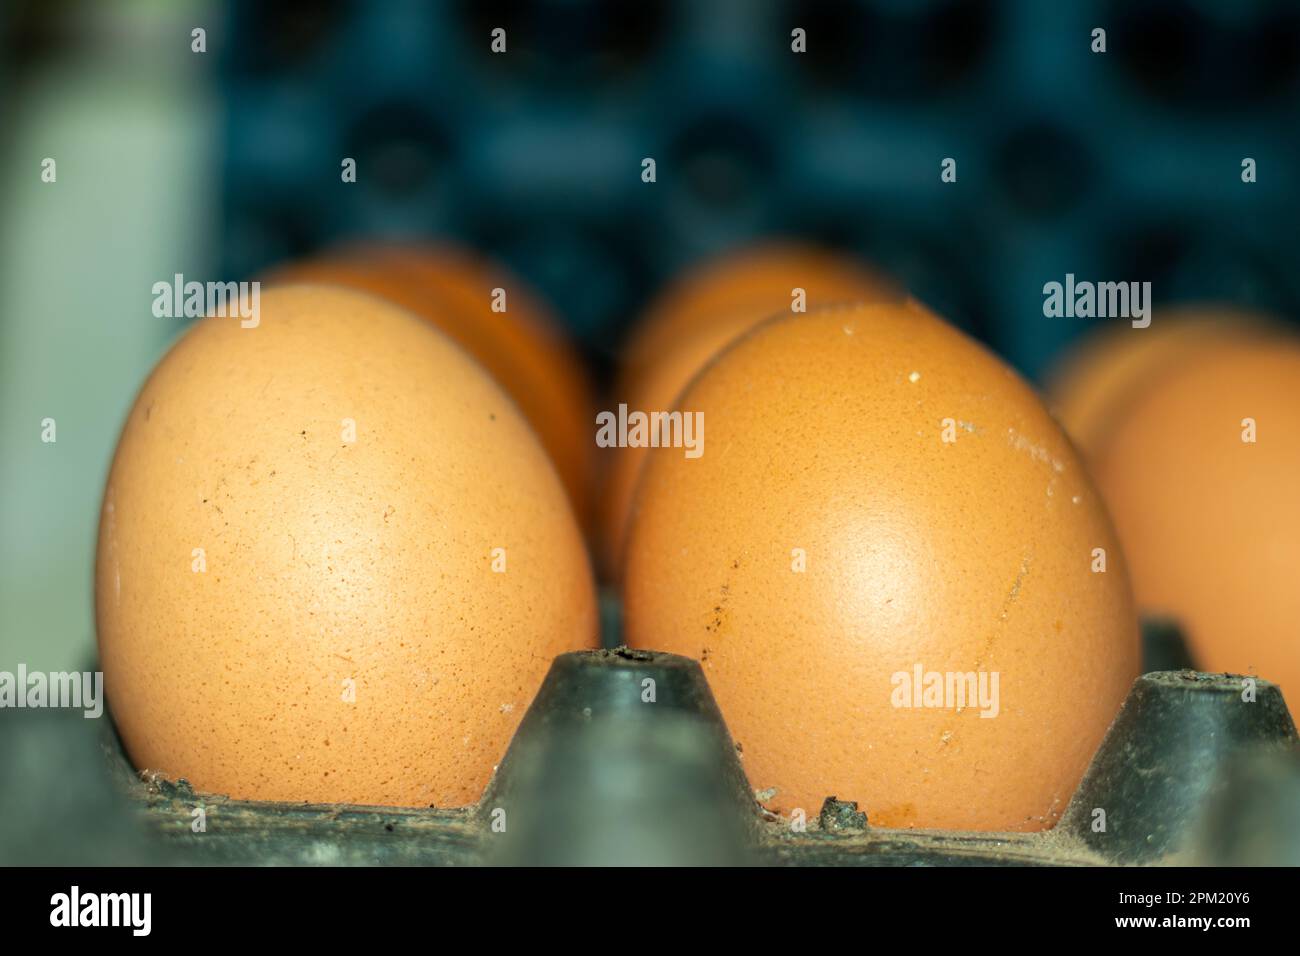 Le uova sono imballate piene di proteina di alta qualità. Le uova sono una fonte naturale di molte sostanze nutrienti, tra cui proteine di alta qualità, vitamine e minerali Foto Stock